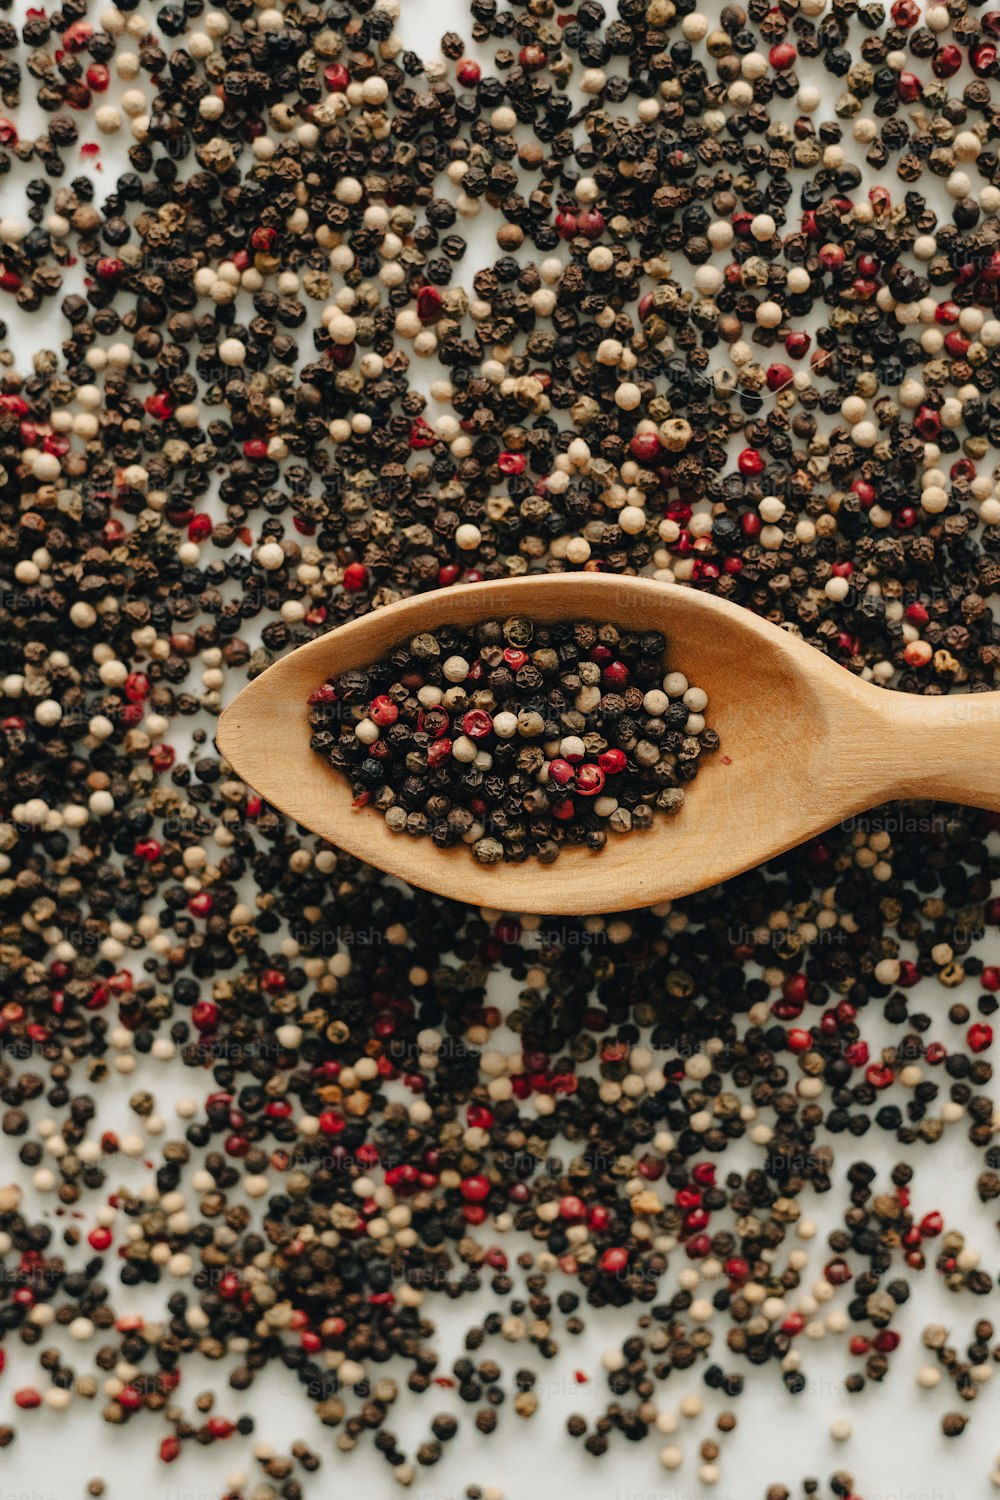 uma colher de pau cheia de sementes pretas e vermelhas